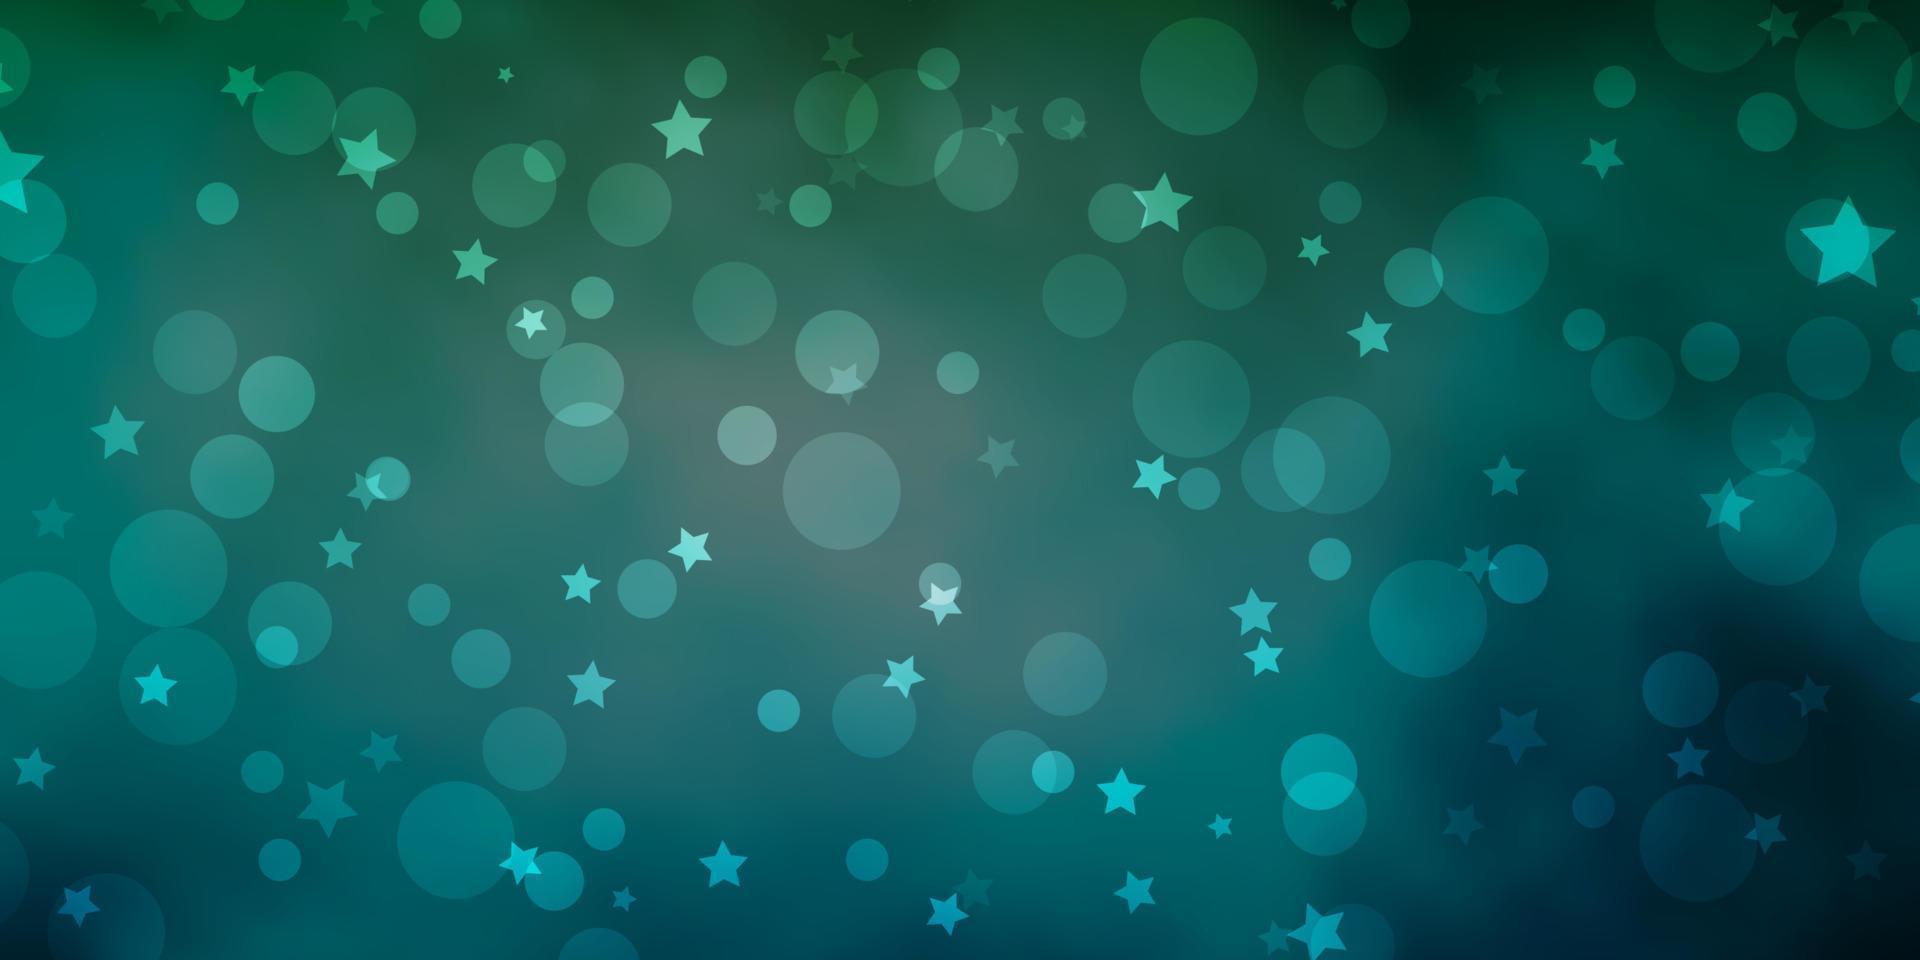 texture de vecteur bleu clair, vert avec des cercles, des étoiles.